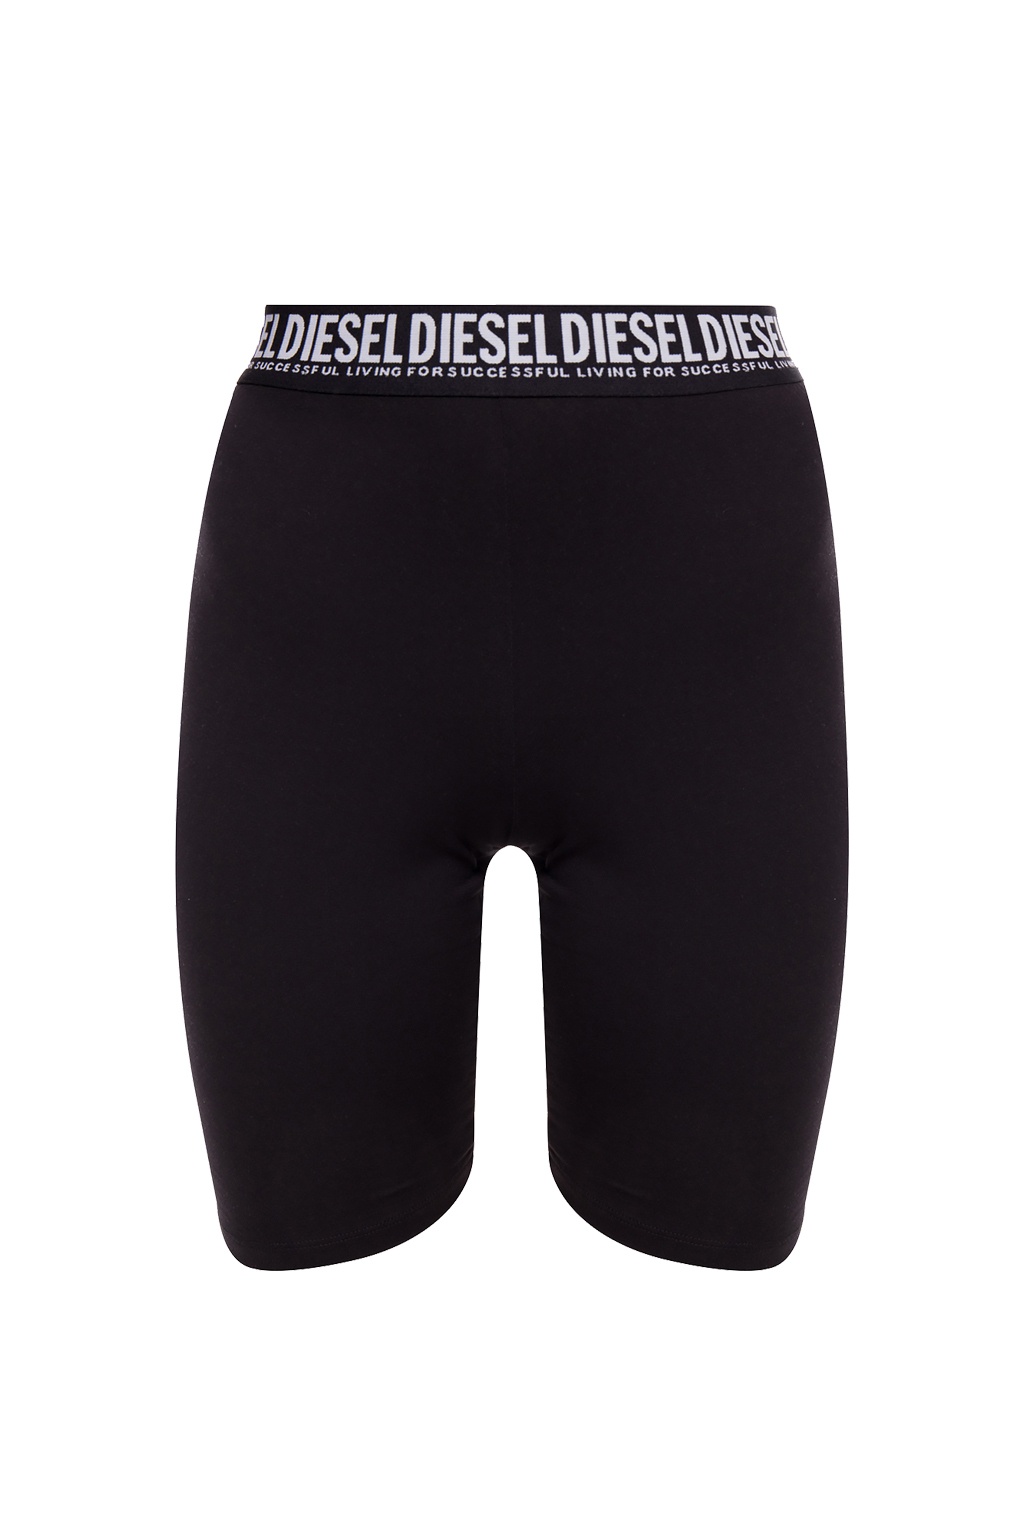 Under Armour HG Wordmark Leggings - GenesinlifeShops Germany - Short  leggings Diesel